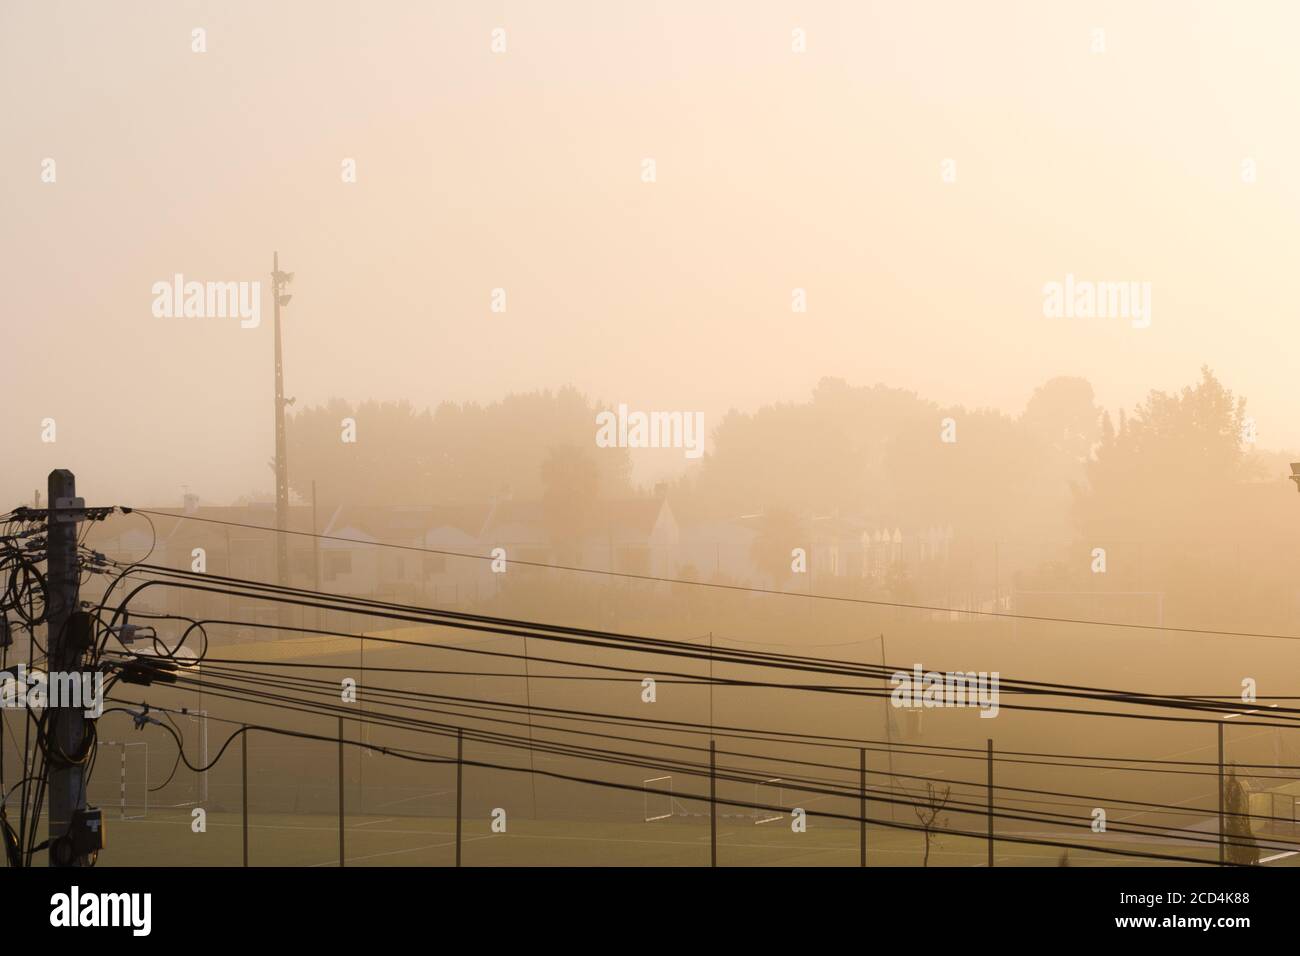 Nebel von der Sonne in goldenen Tönen in einem Stadt mit Häusern und Bäumen im Hintergrund und elektrische Kabel in der Vorderseite Stockfoto